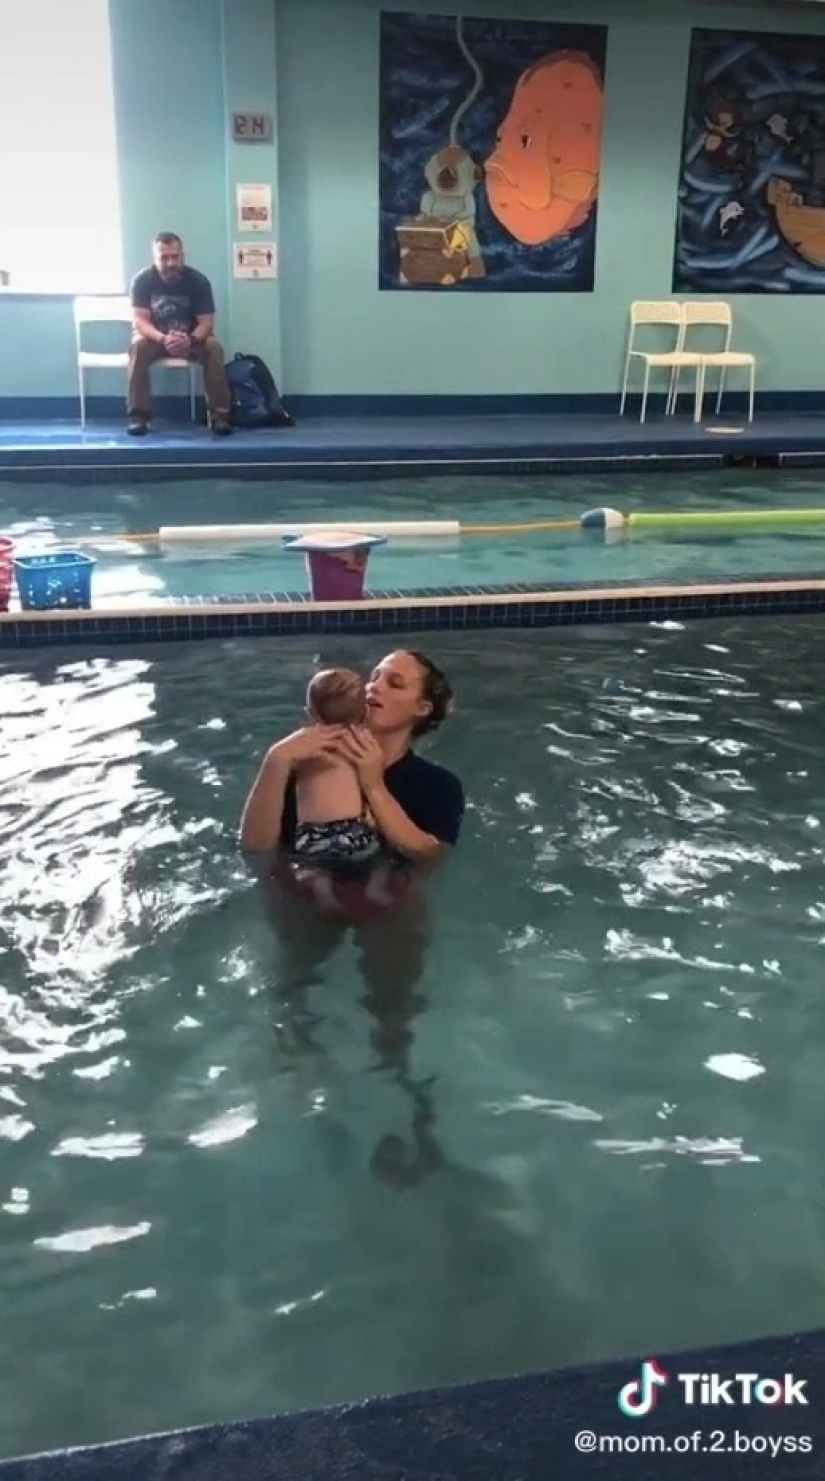 La madre recibe amenazas de muerte por lo que se le permitió tirar de 8 meses de edad, hijo de la piscina para una lección sobre la supervivencia